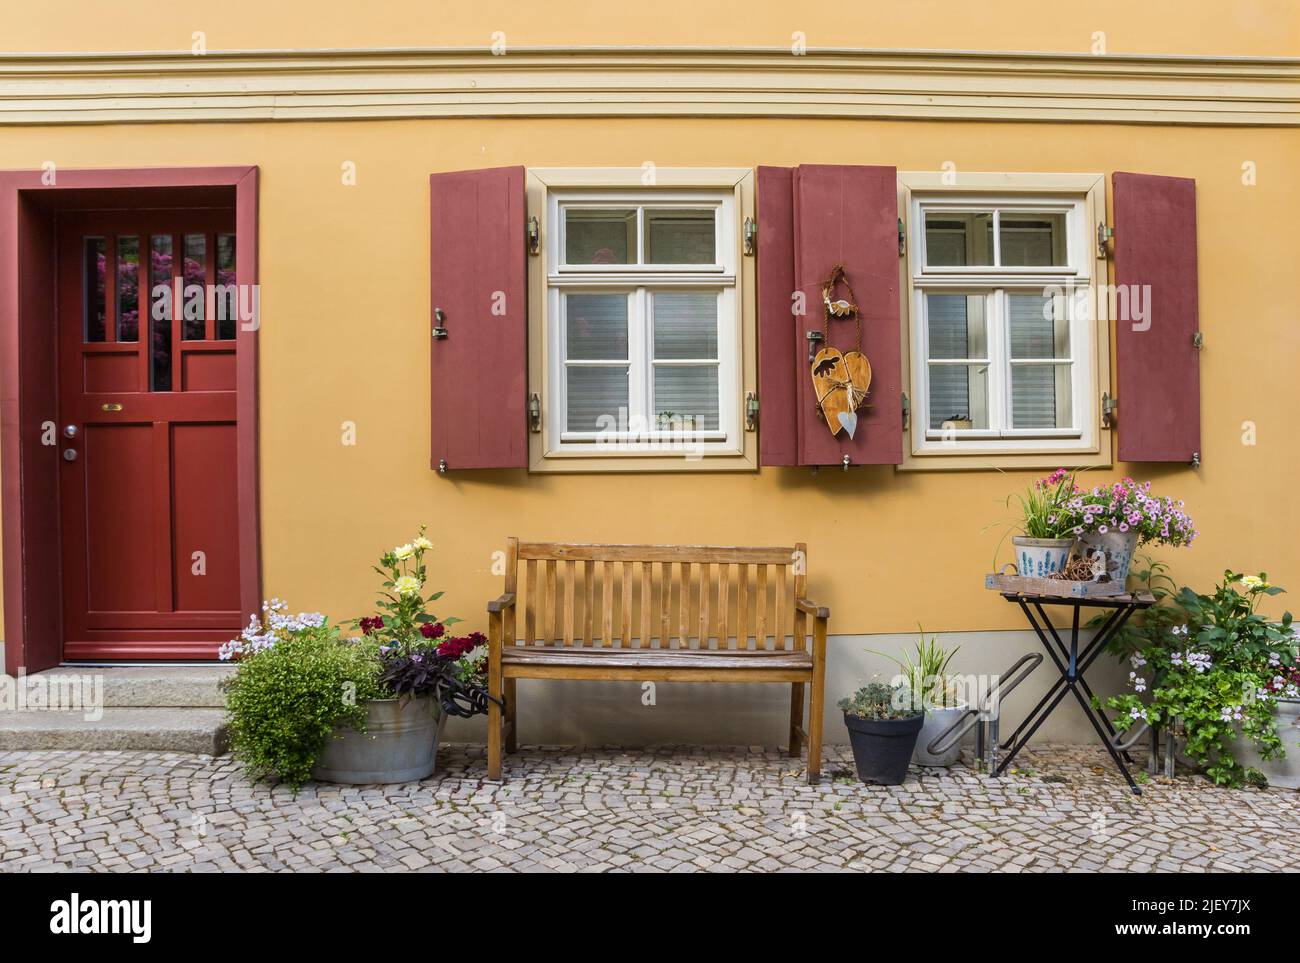 Banco y flores frente a una antigua casa en Quedlinburg, Alemania Foto de stock